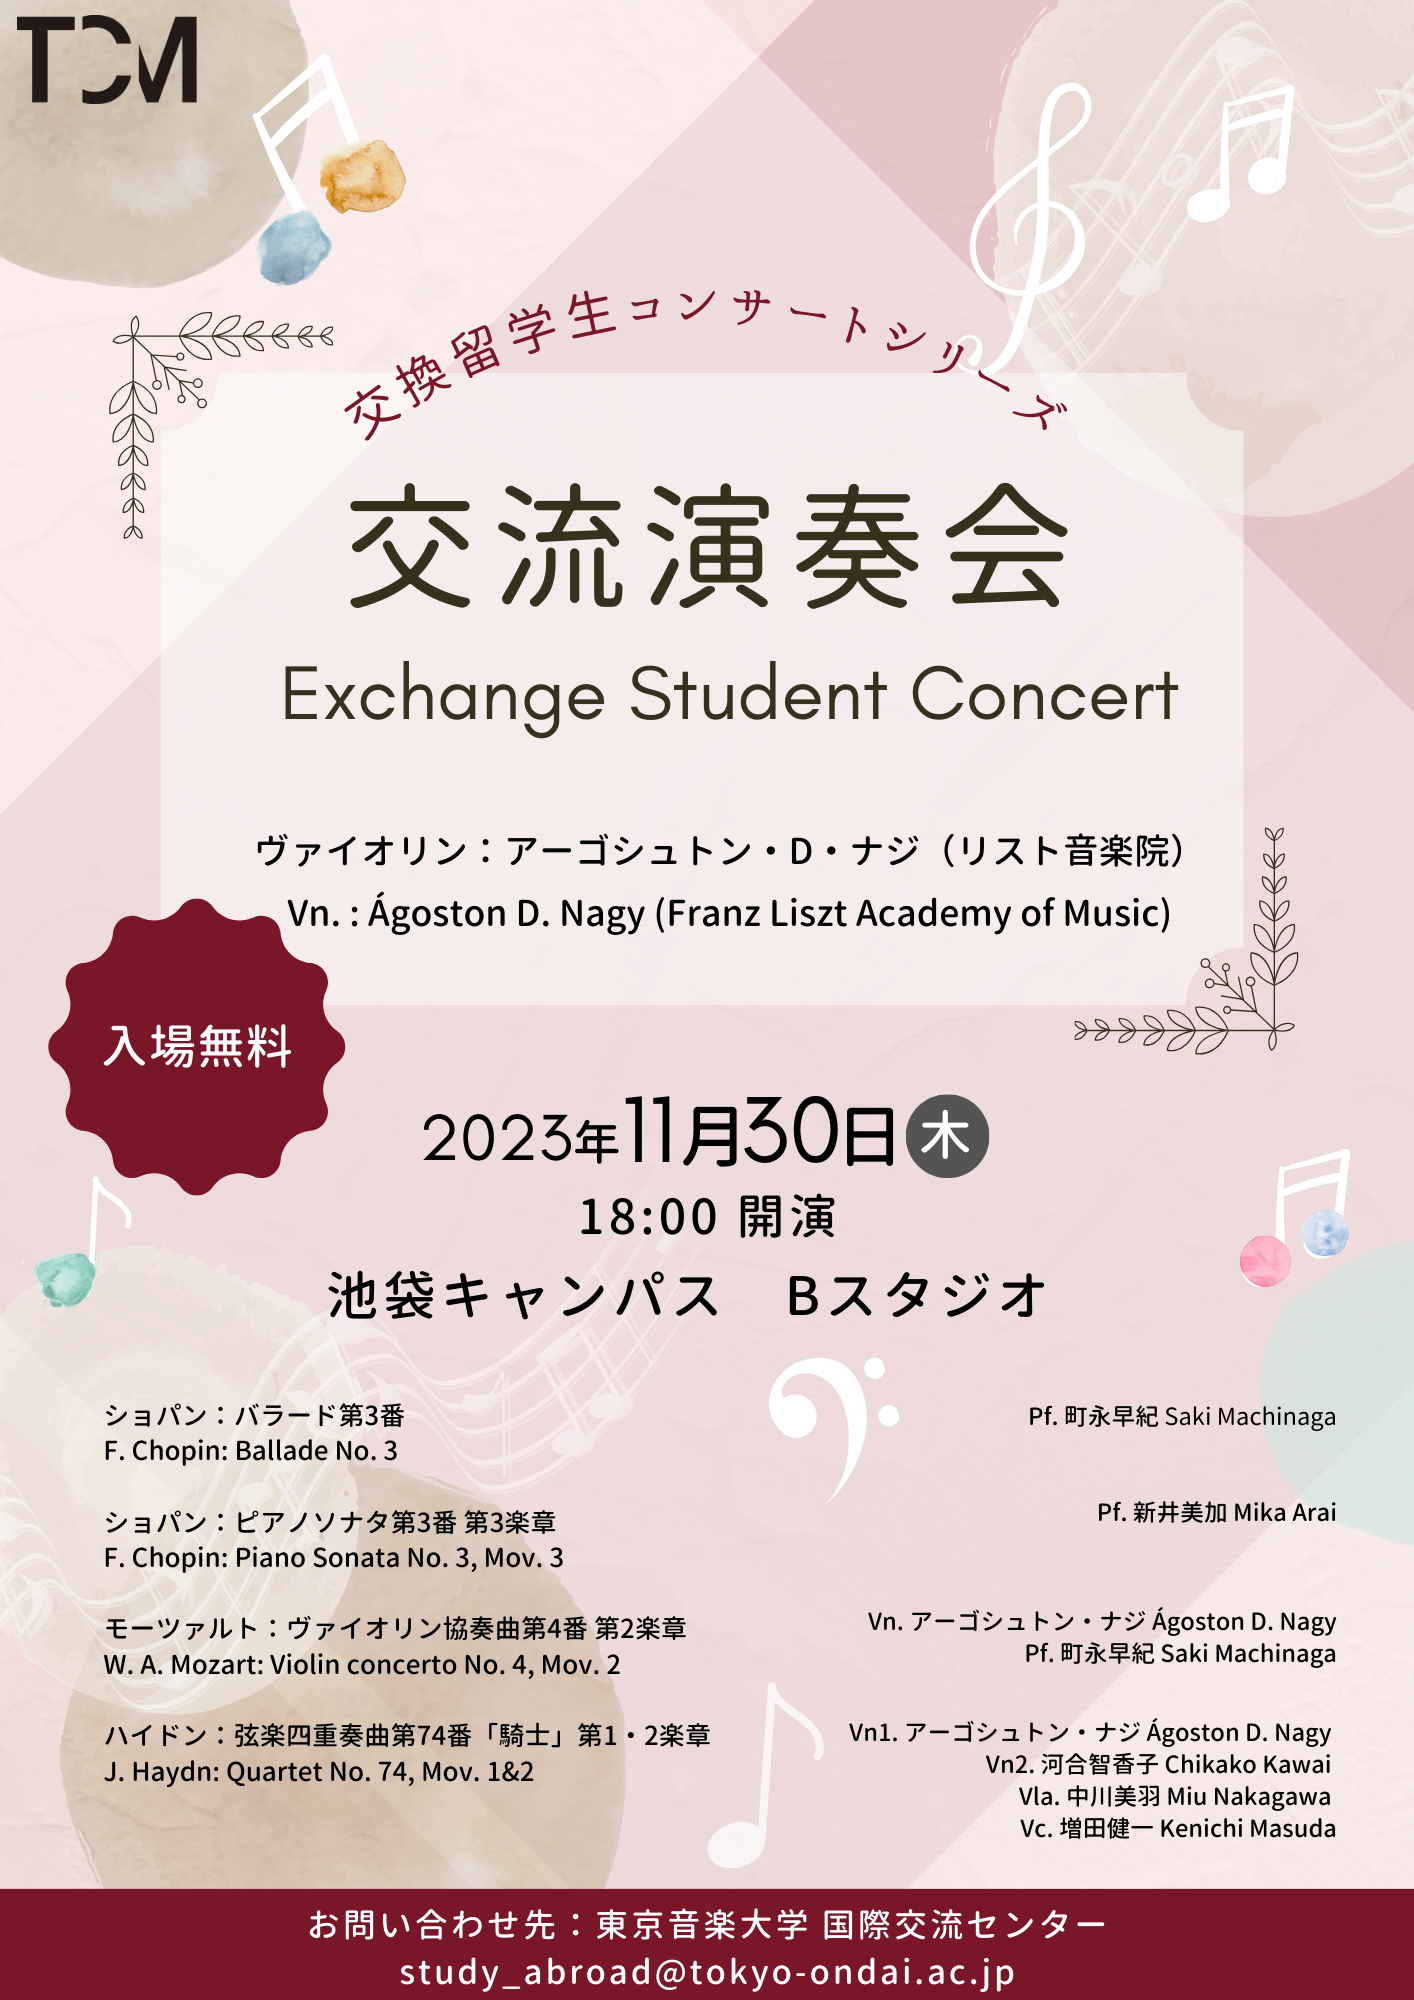 交換留学生コンサートシリーズ「Exchange Student Concert 交流演奏会」